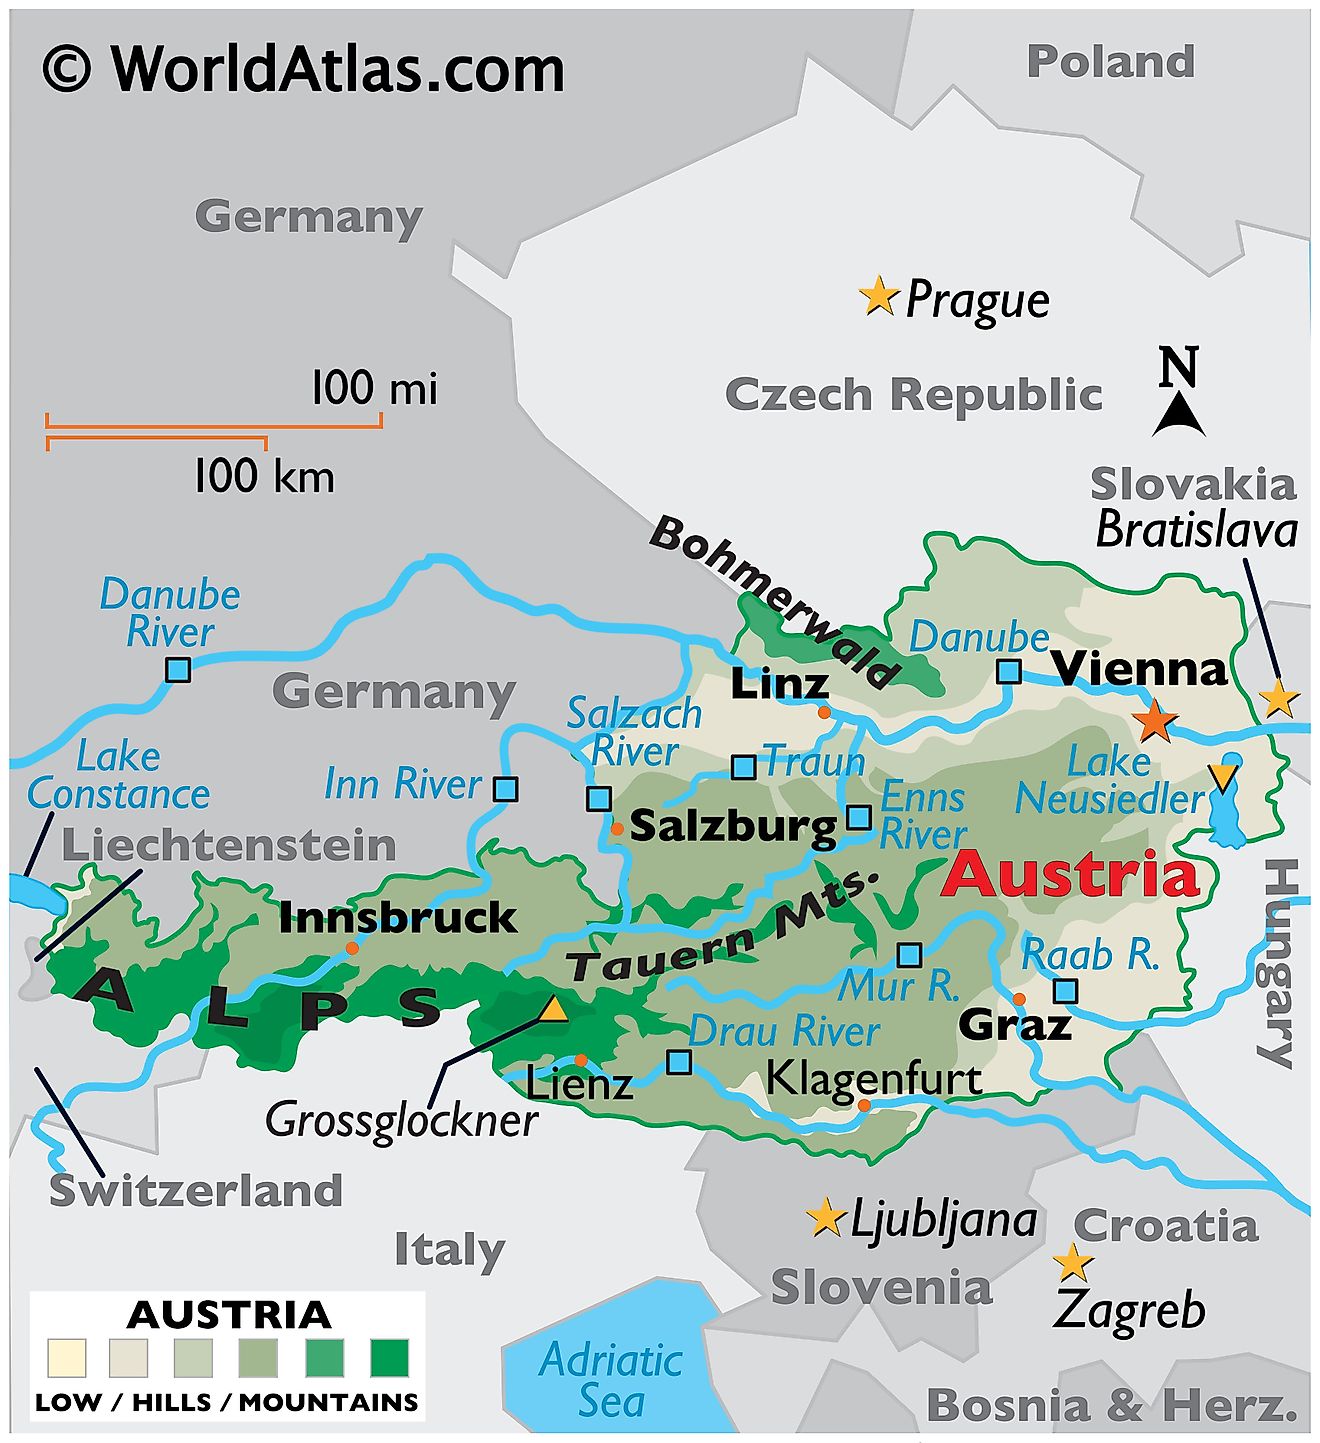 Mapa físico de Austria que muestra el terreno, los ríos principales, los puntos extremos, las cadenas montañosas, el lago Neusiedler, las ciudades importantes, las fronteras internacionales, etc.